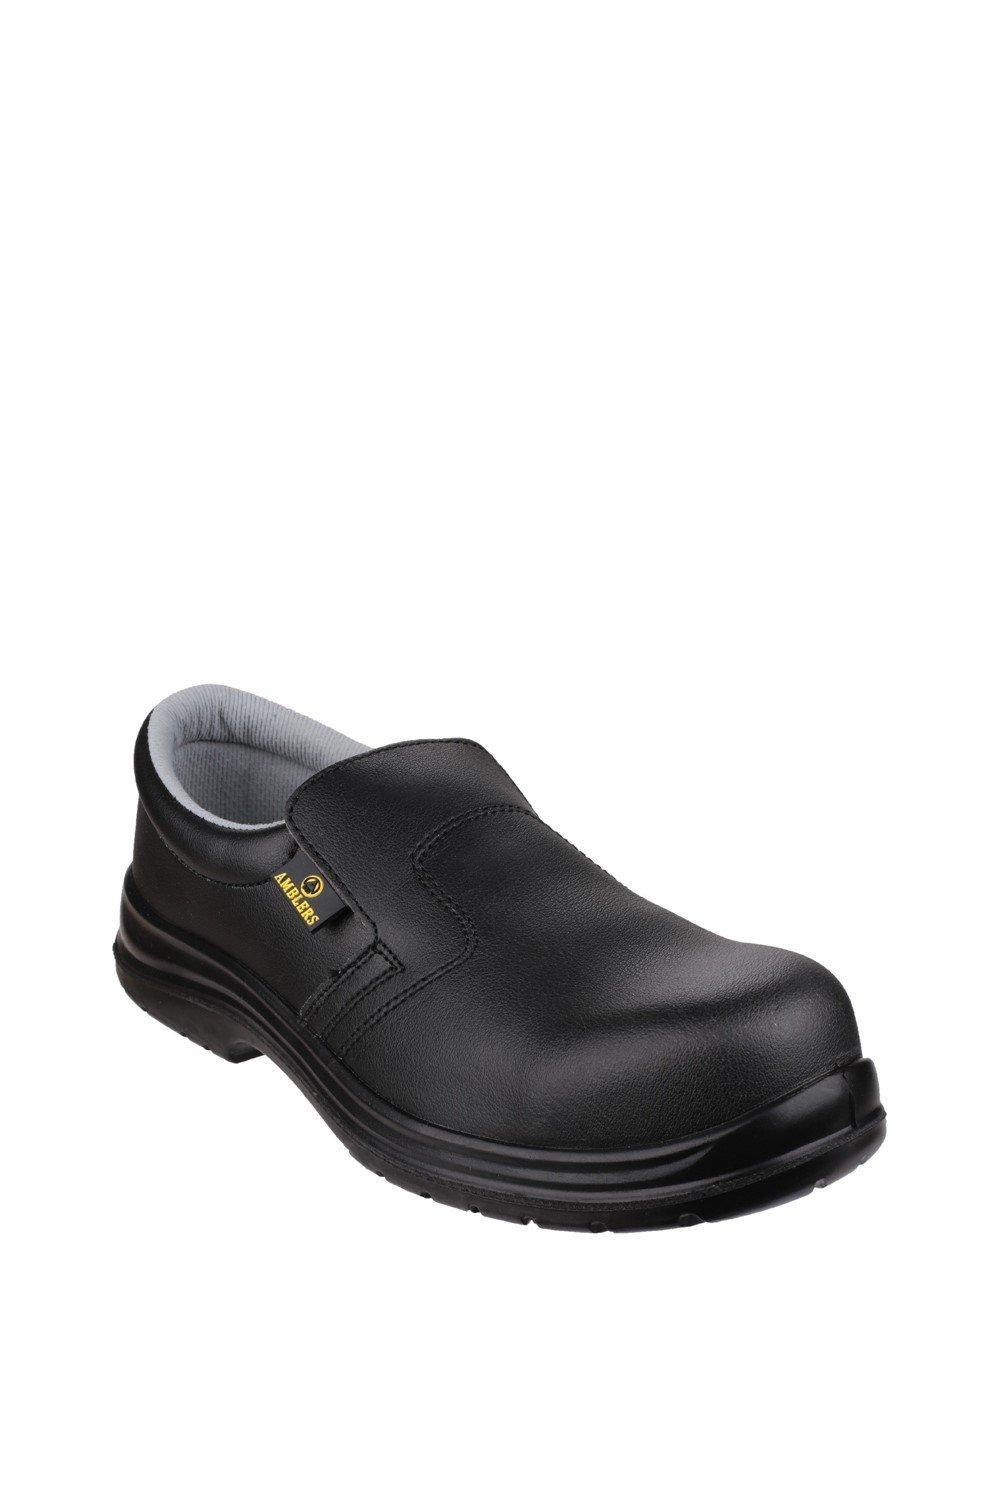 цена Защитная обувь 'FS661' Amblers Safety, черный